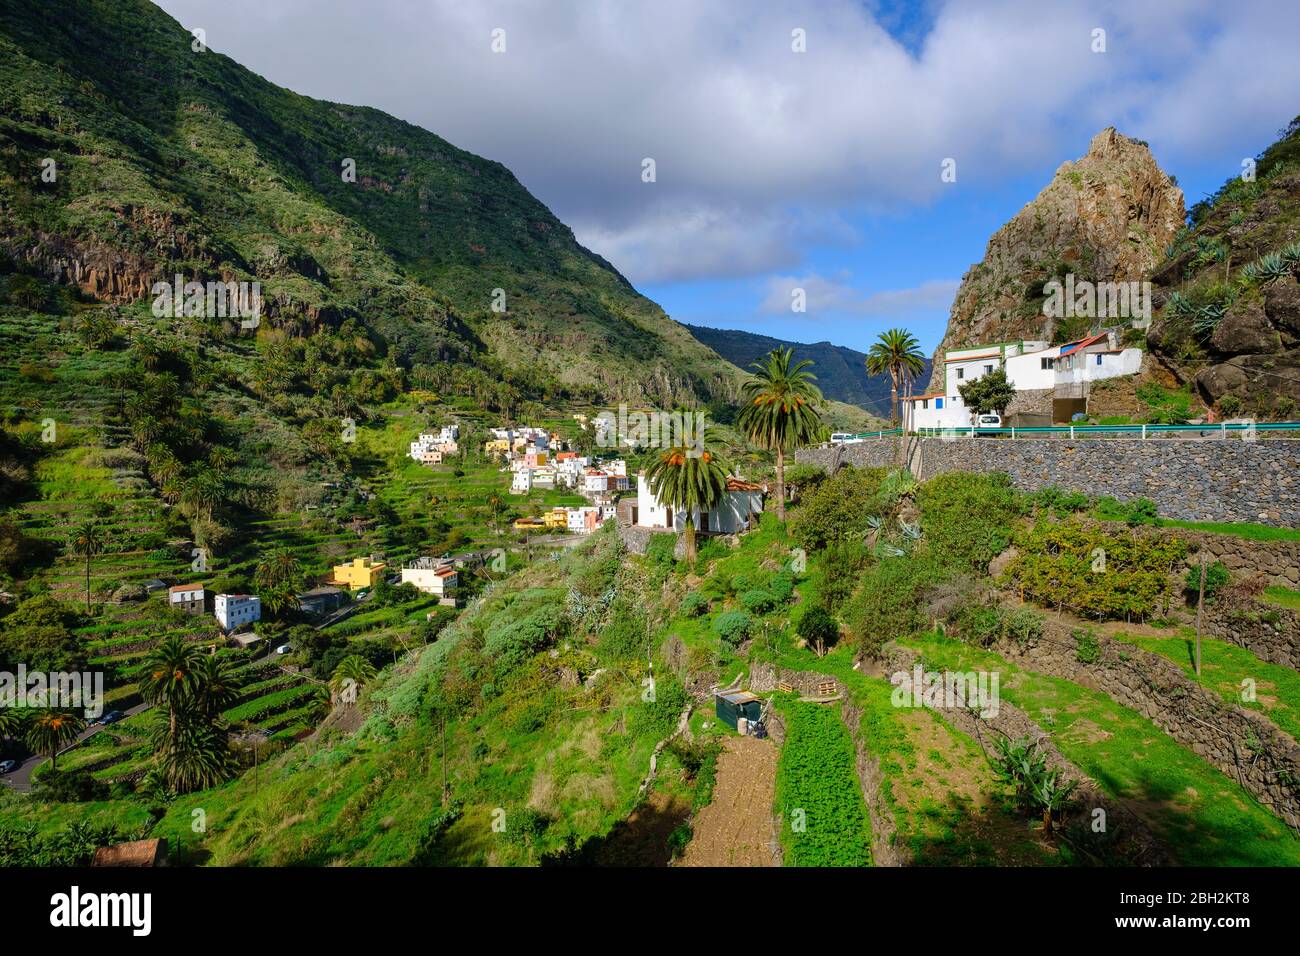 Spain, Province of Santa Cruz de Tenerife, Hermigua, Rural village located in green valley of La Gomera island Stock Photo